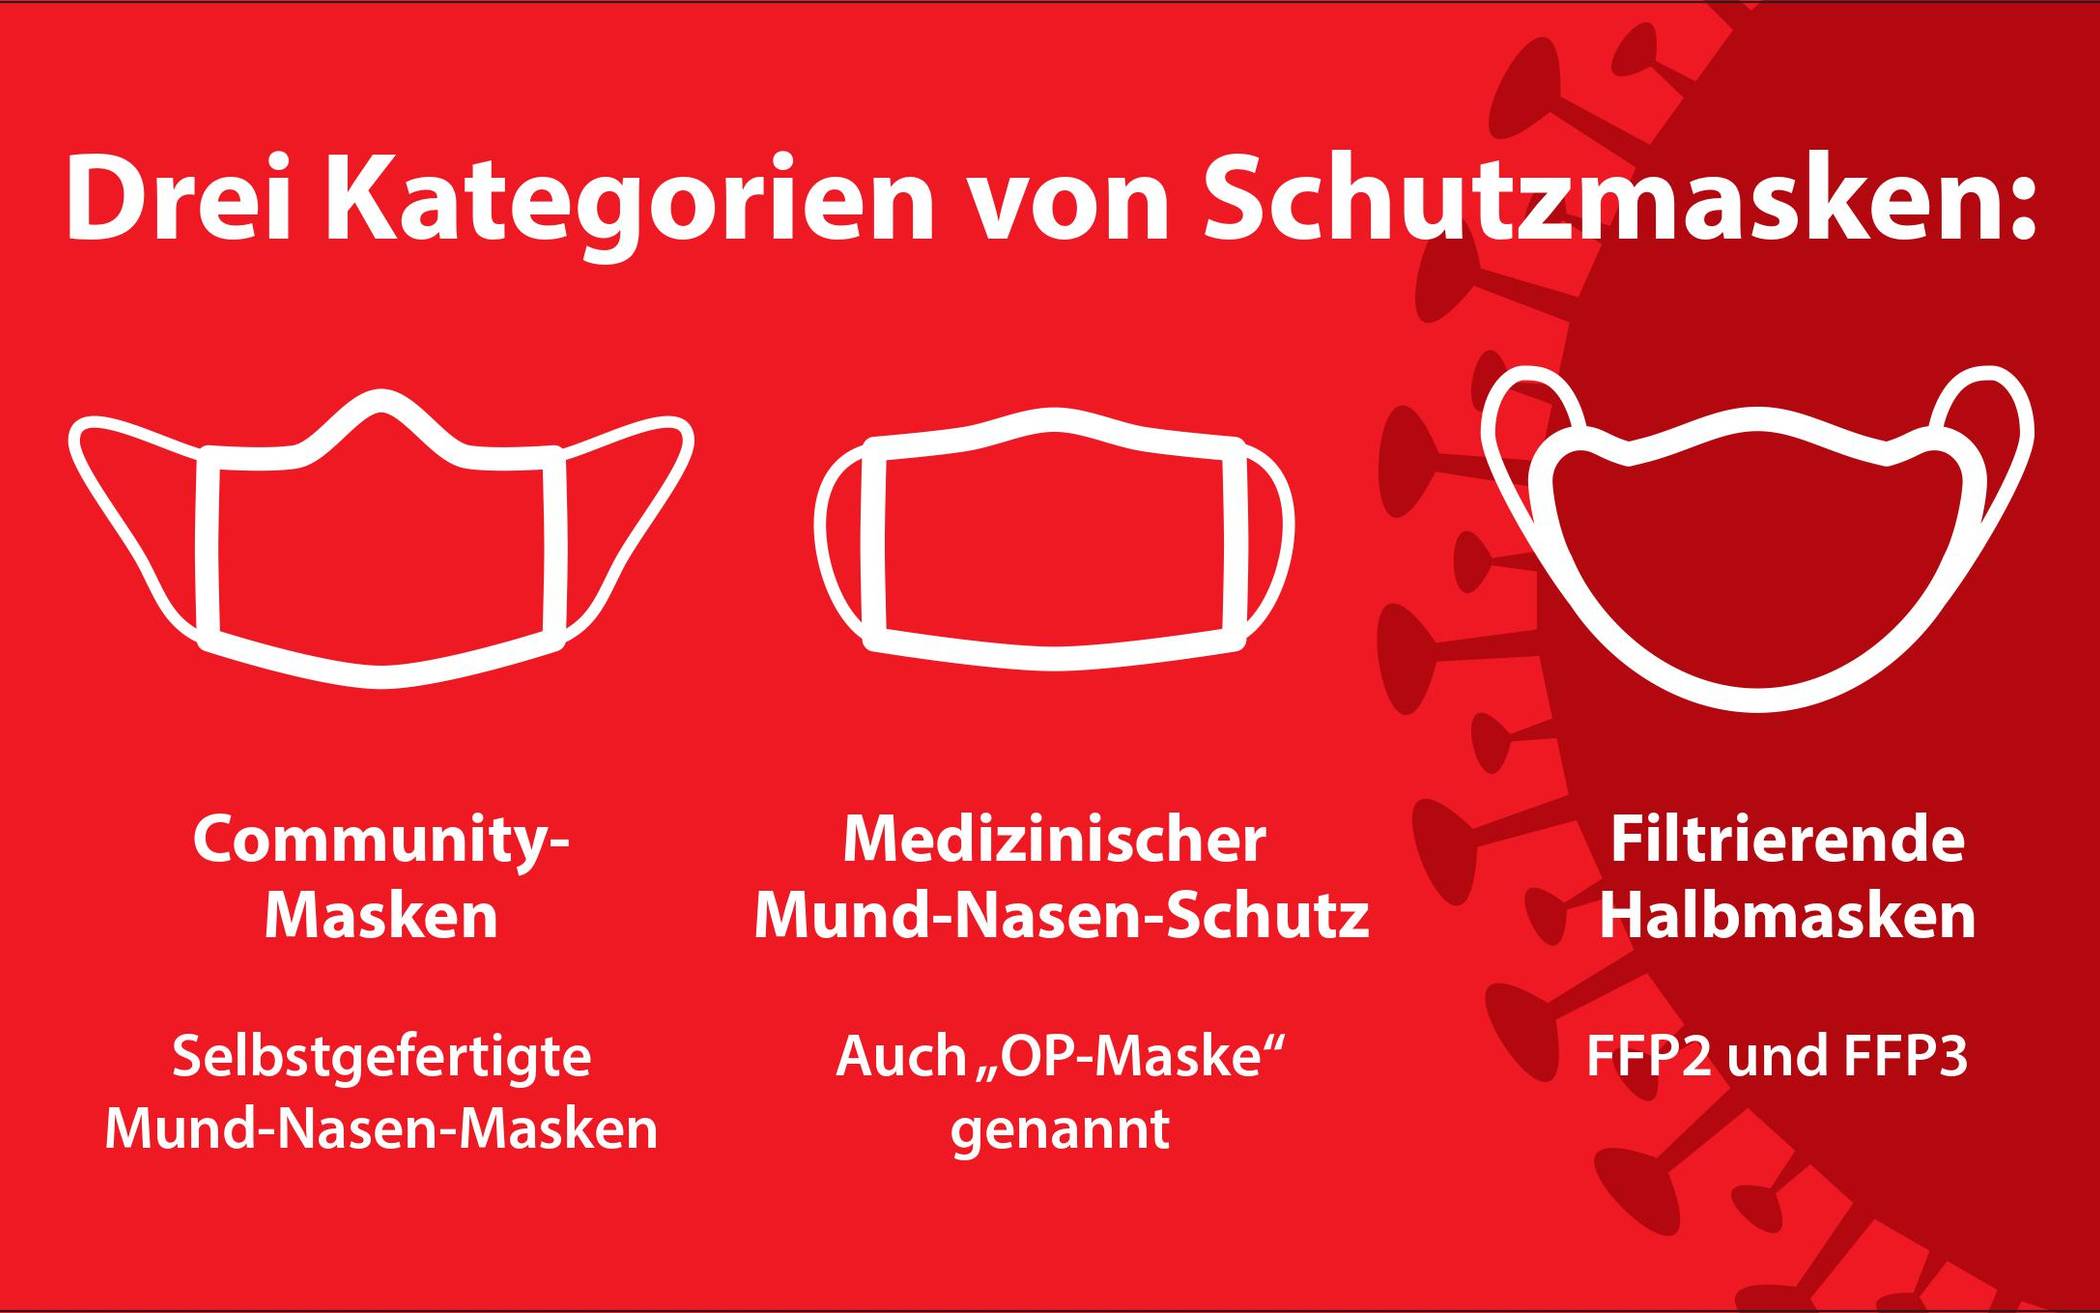  Apotheken in Wuppertal beraten zum richtigen Umgang mit Schutzmasken. 